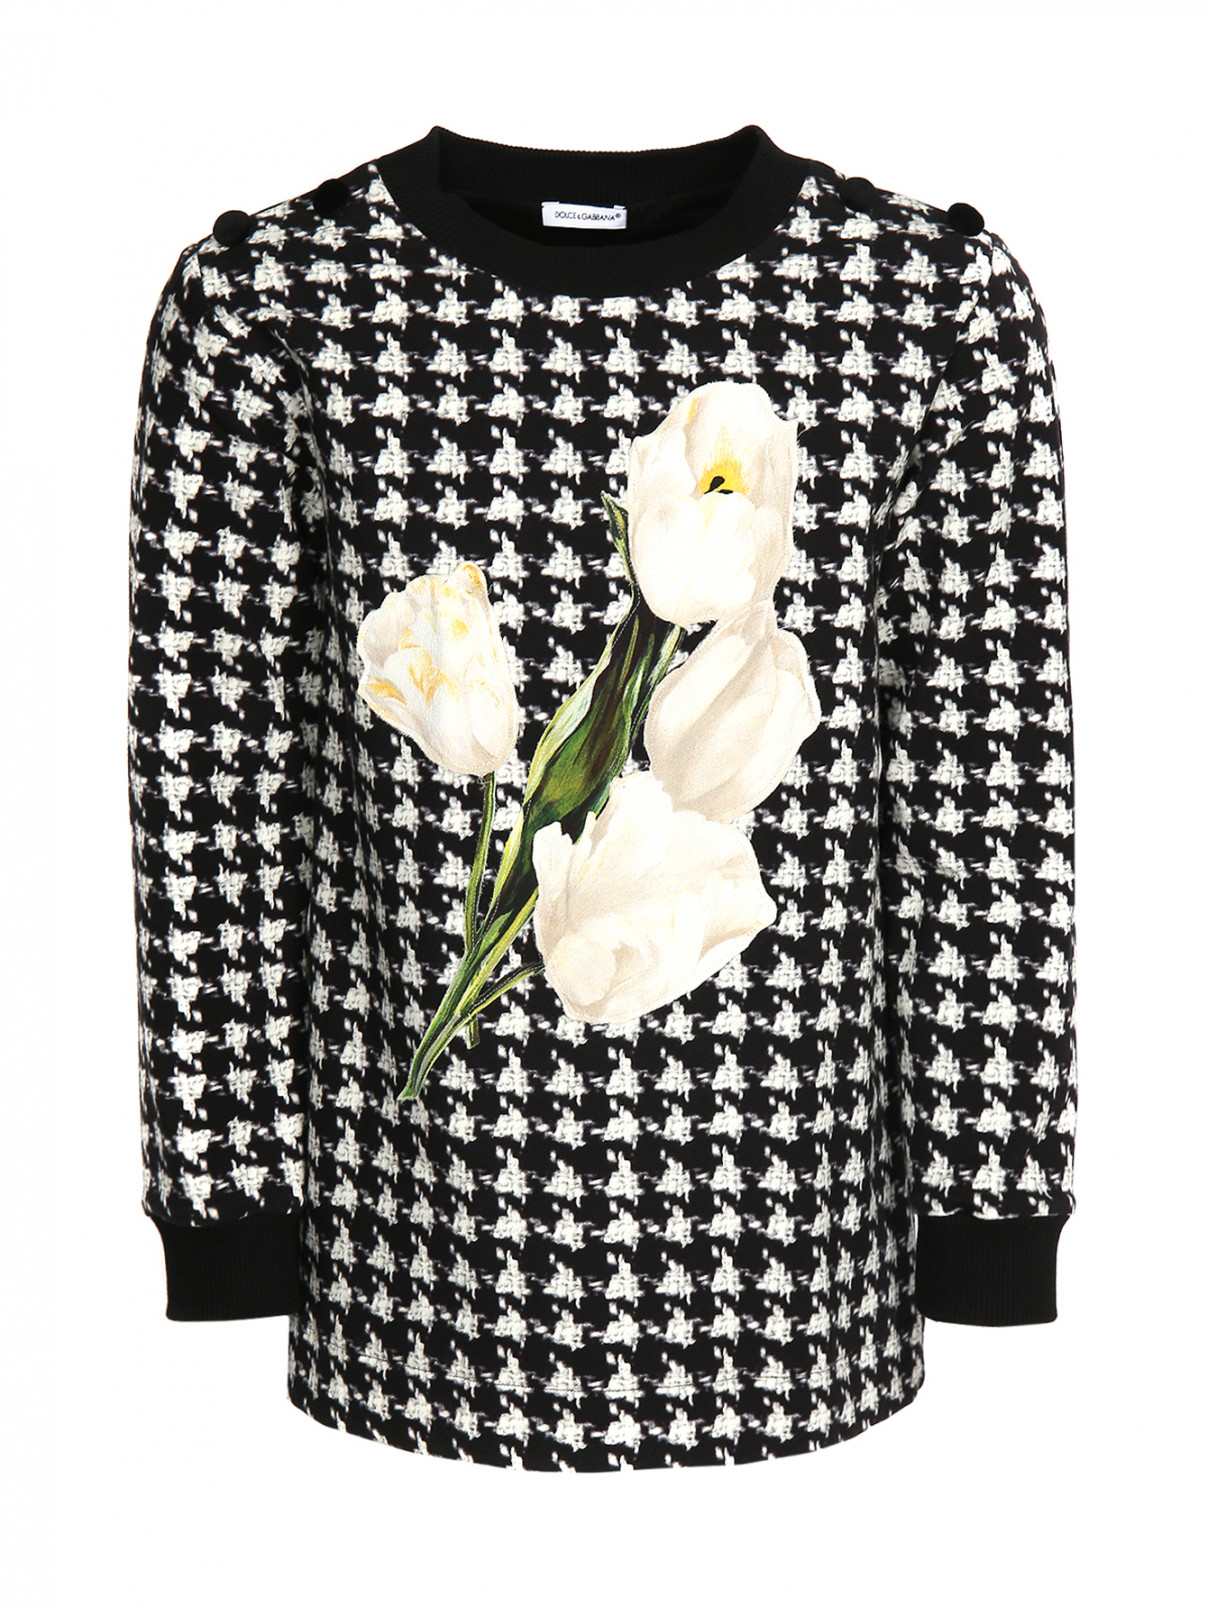 Свитшот с принтом Dolce & Gabbana  –  Общий вид  – Цвет:  Черный